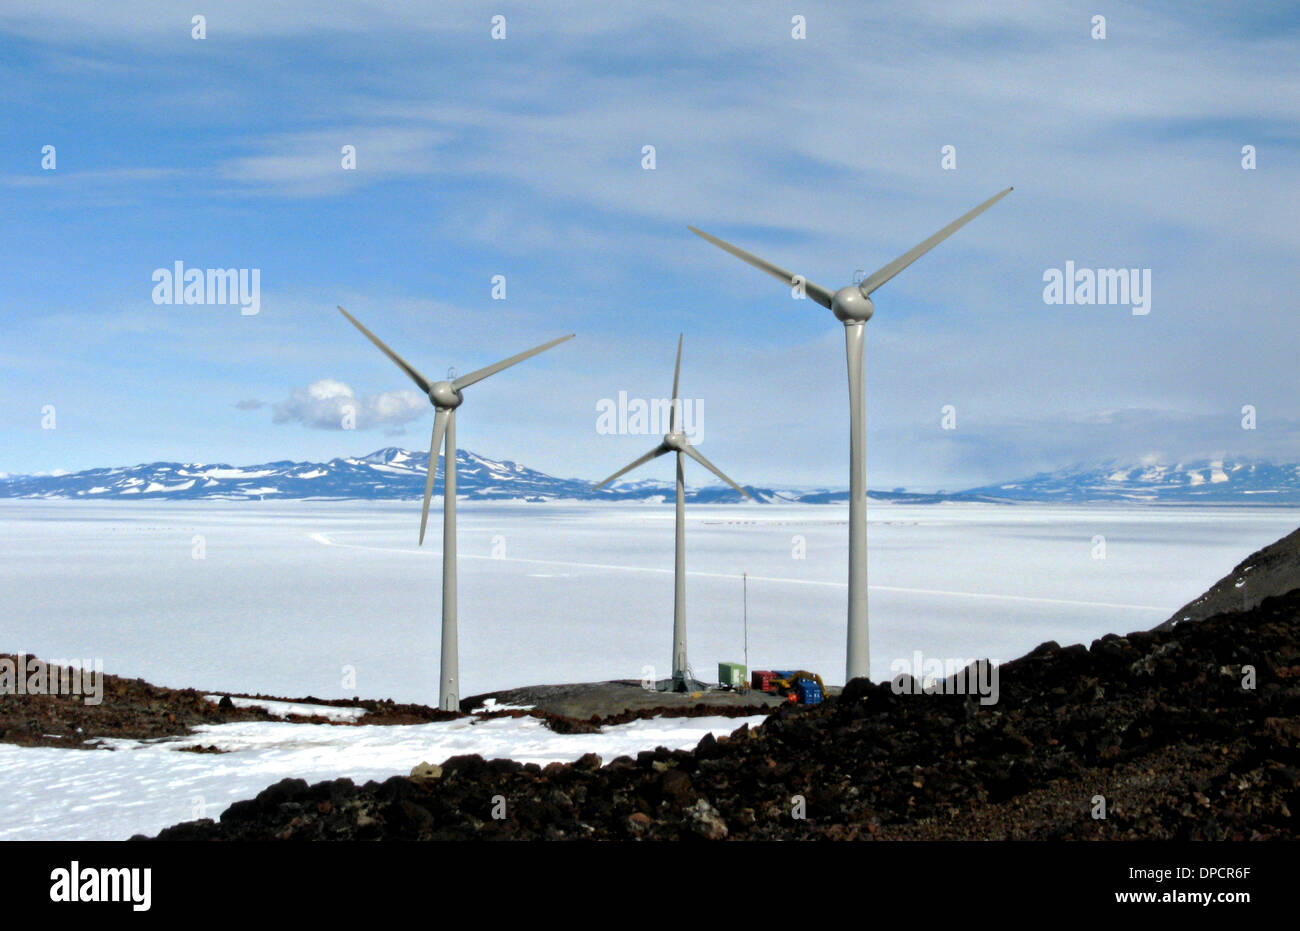 Le turbine eoliche condivisi tra gli Stati Uniti e la Nuova Zelanda di ricerca in Antartide presso le stazioni di McMurdo e la base di Scott Dicembre 13, 2009. Le turbine possono produrre 990 chilowatt di energia elettrica che consente di risparmiare tanto quanto 240.000 galloni di carburante diesel per anno. La costruzione delle turbine è un progetto comune condiviso da Stati Uniti e Nuova Zelanda. Foto Stock